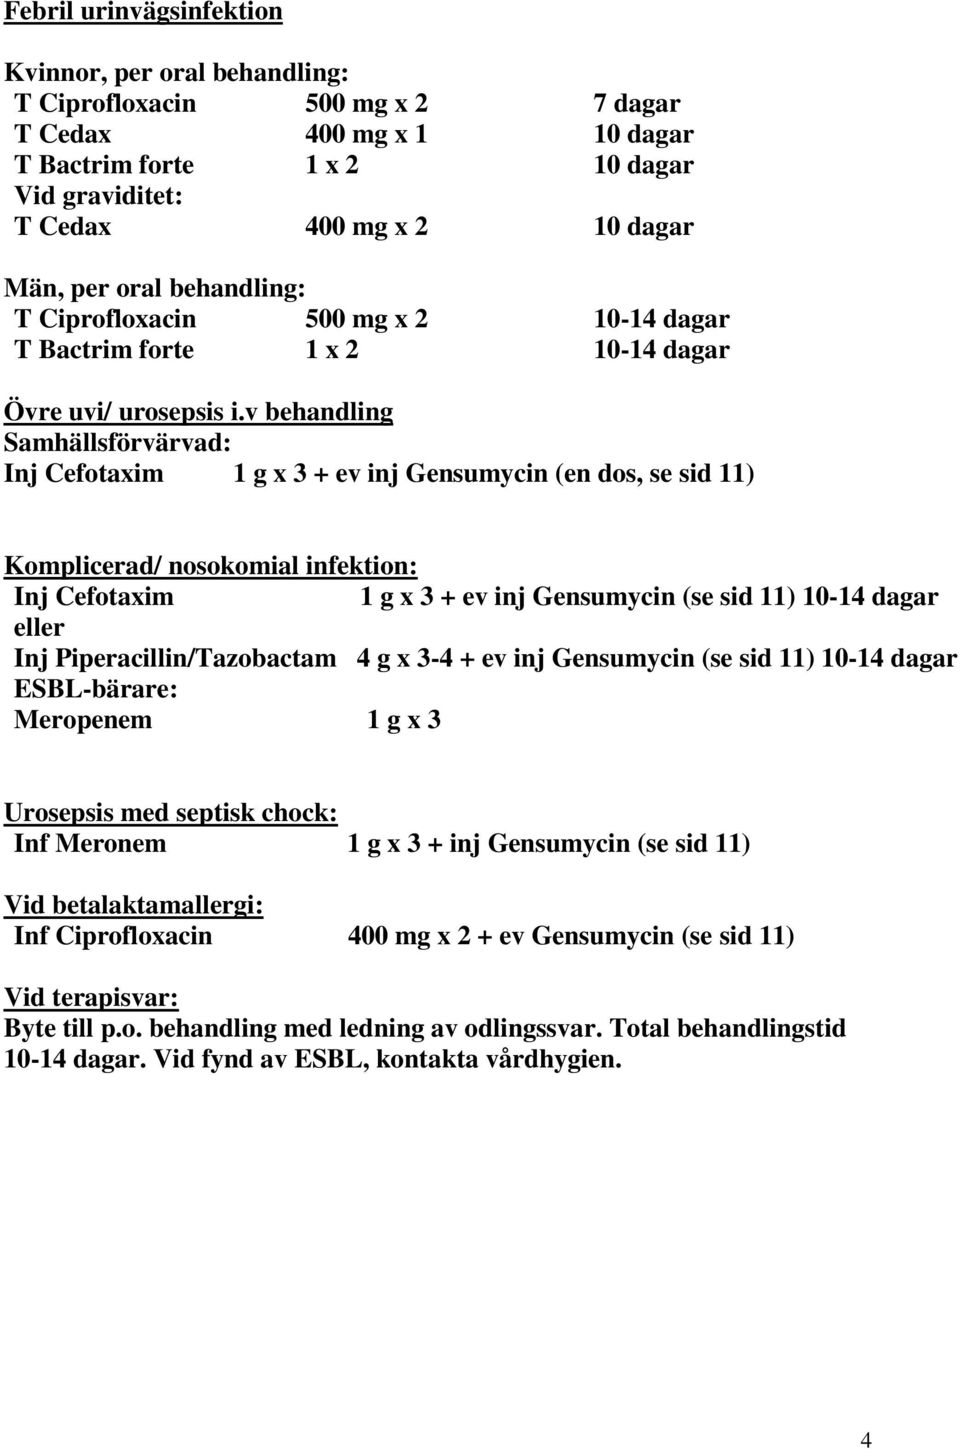 v behandling Samhällsförvärvad: Inj Cefotaxim 1 g x 3 + ev inj Gensumycin (en dos, se sid 11) Komplicerad/ nosokomial infektion: Inj Cefotaxim 1 g x 3 + ev inj Gensumycin (se sid 11) 10-14 dagar Inj